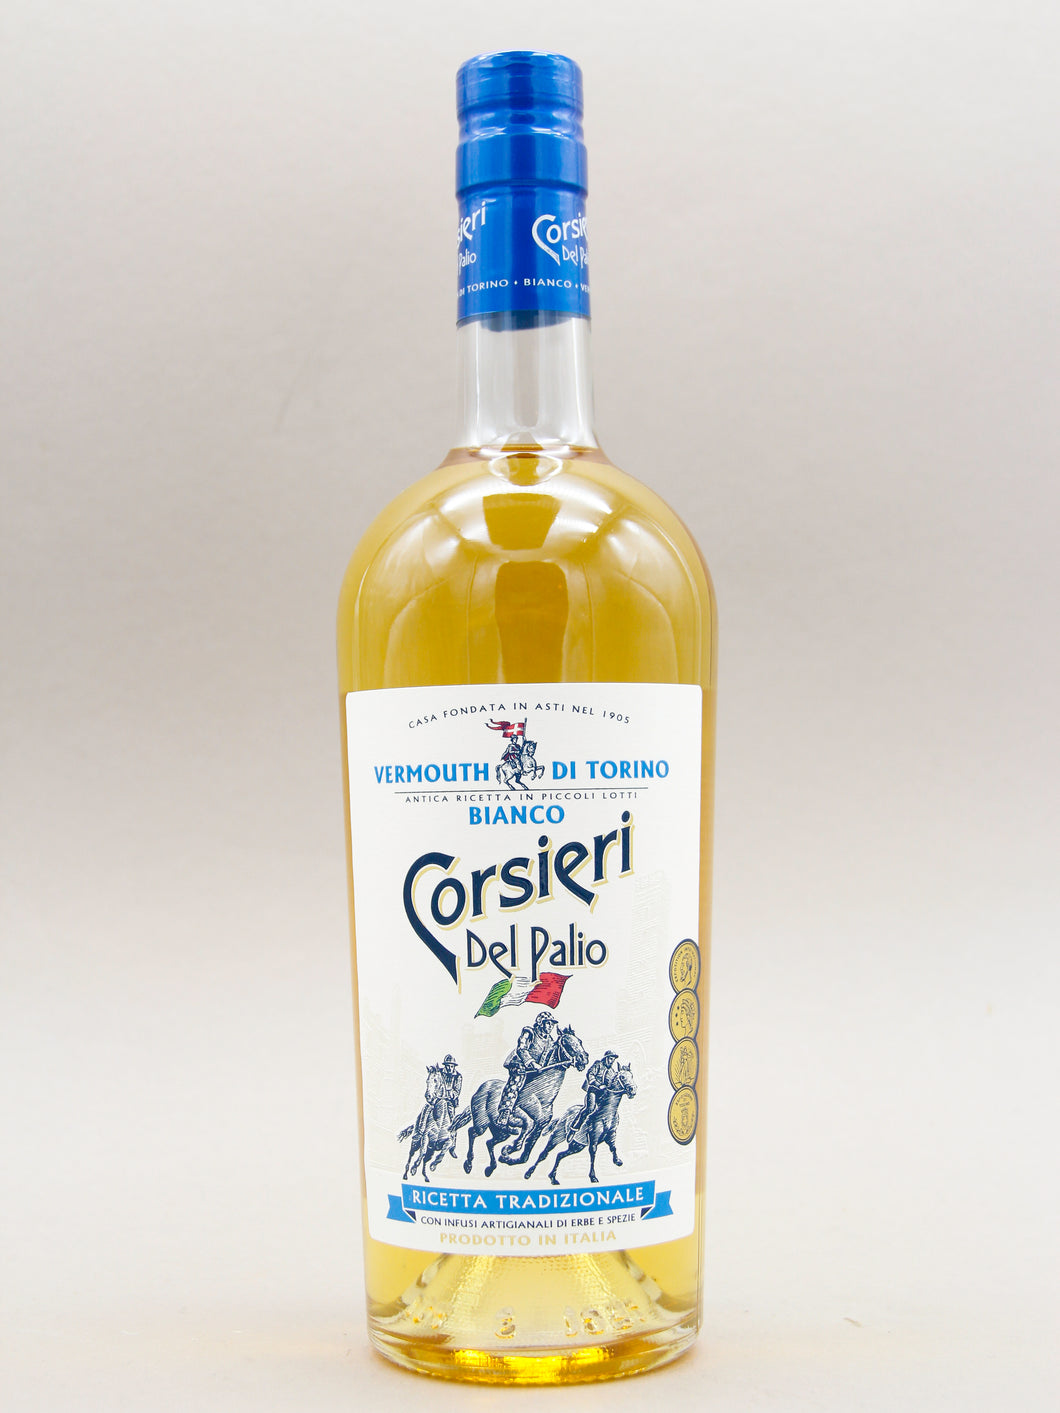 Corsieri Del Palio Bianco, Vermouth (16.5%, 75cl)